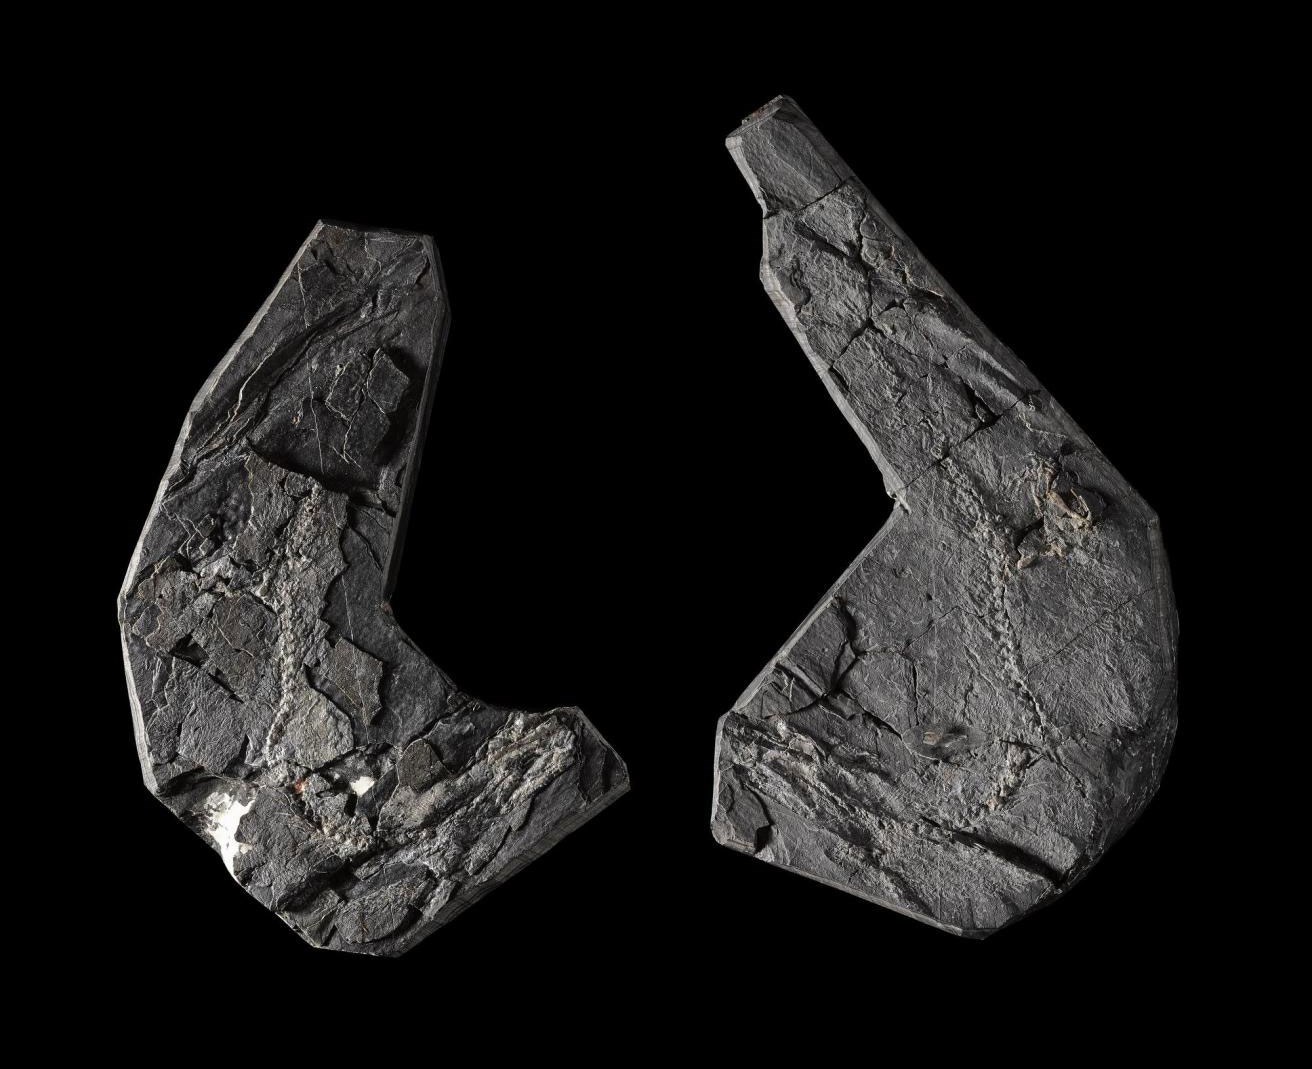 Fossil remains of Westhlothiana lizziae